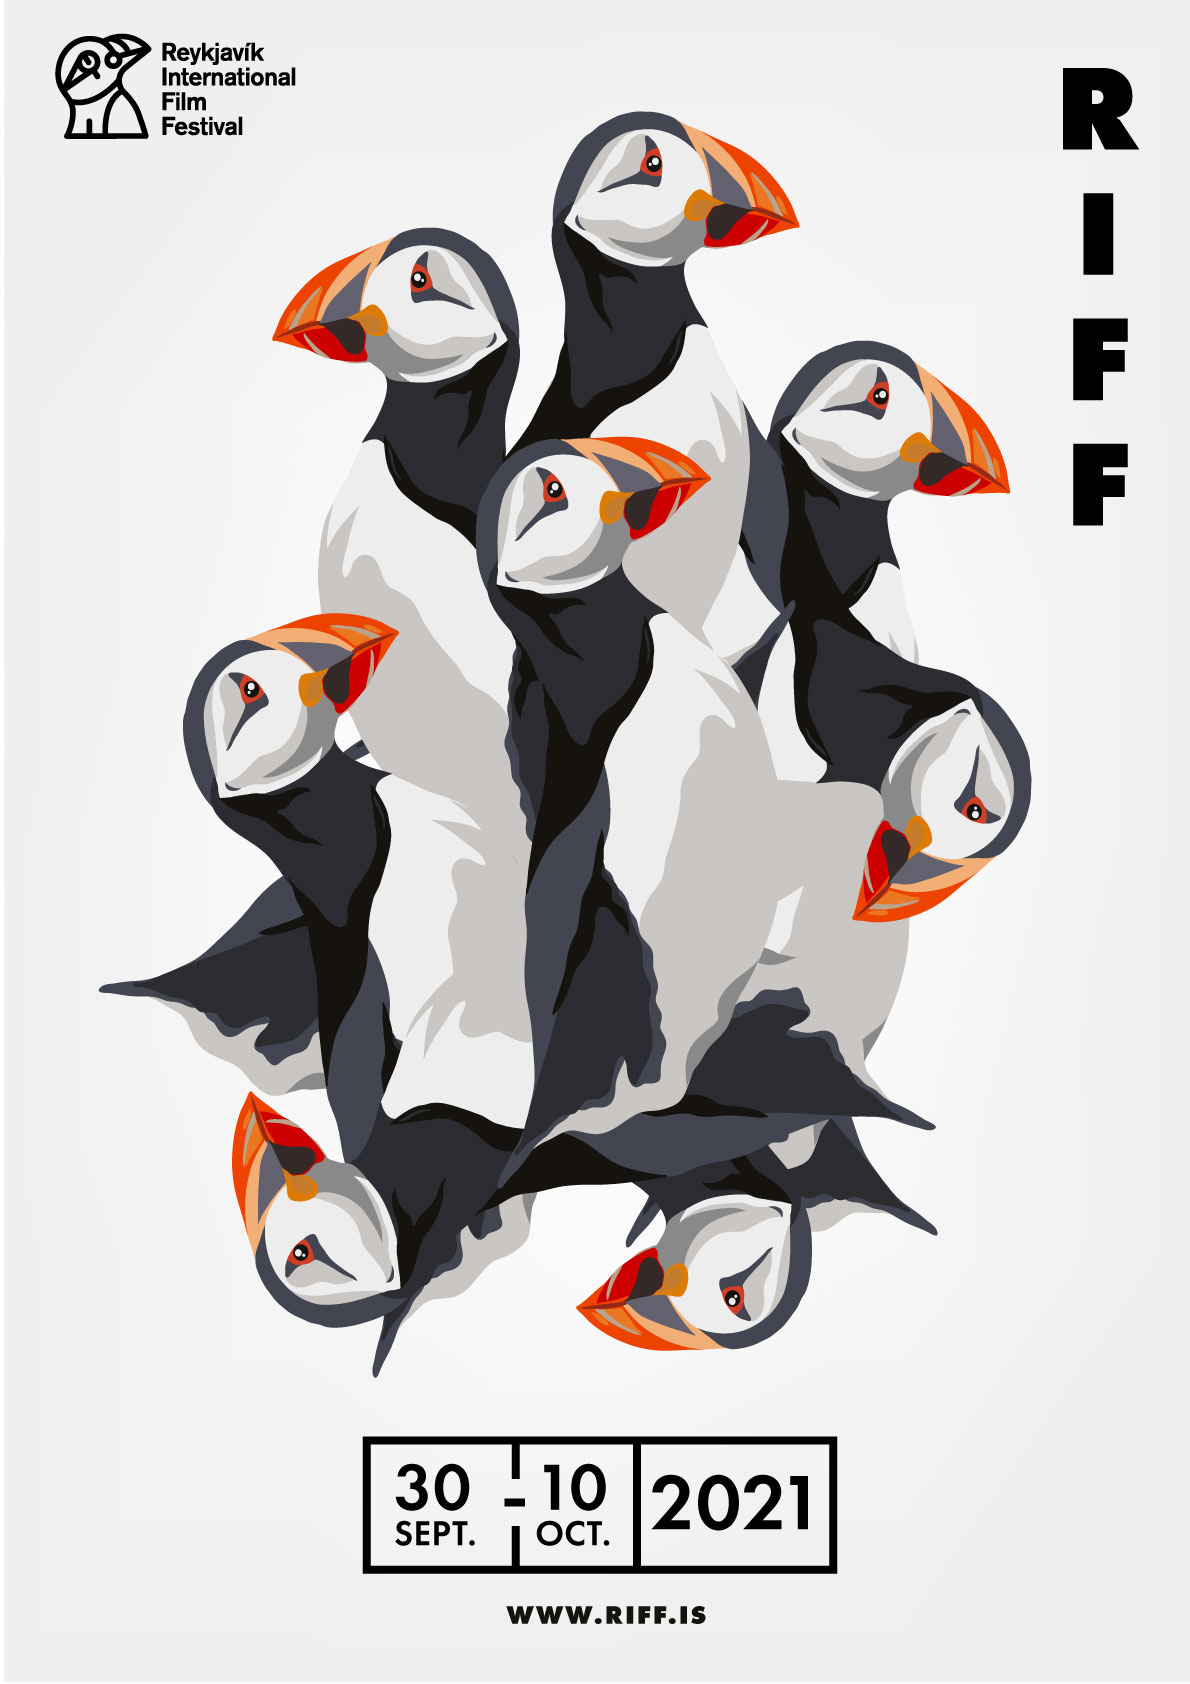 RIFF – Reykjavík International Film Festival